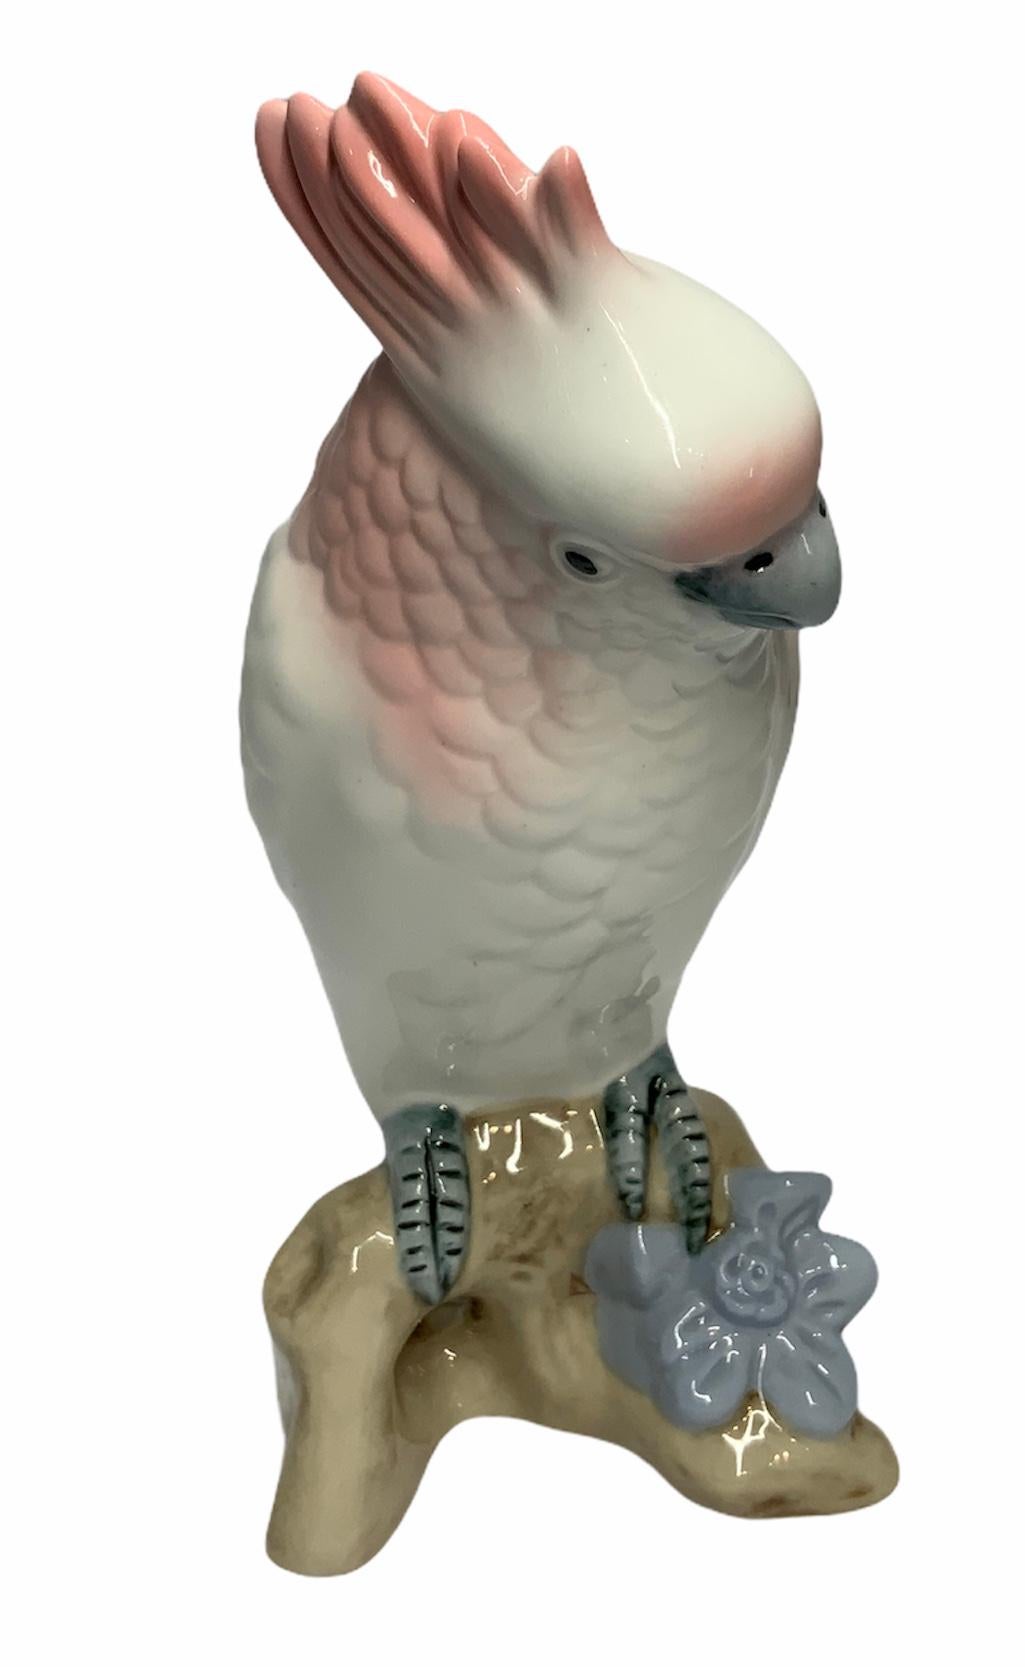 Hand-Painted Royal Dux Porcelain Cockatoo Figure